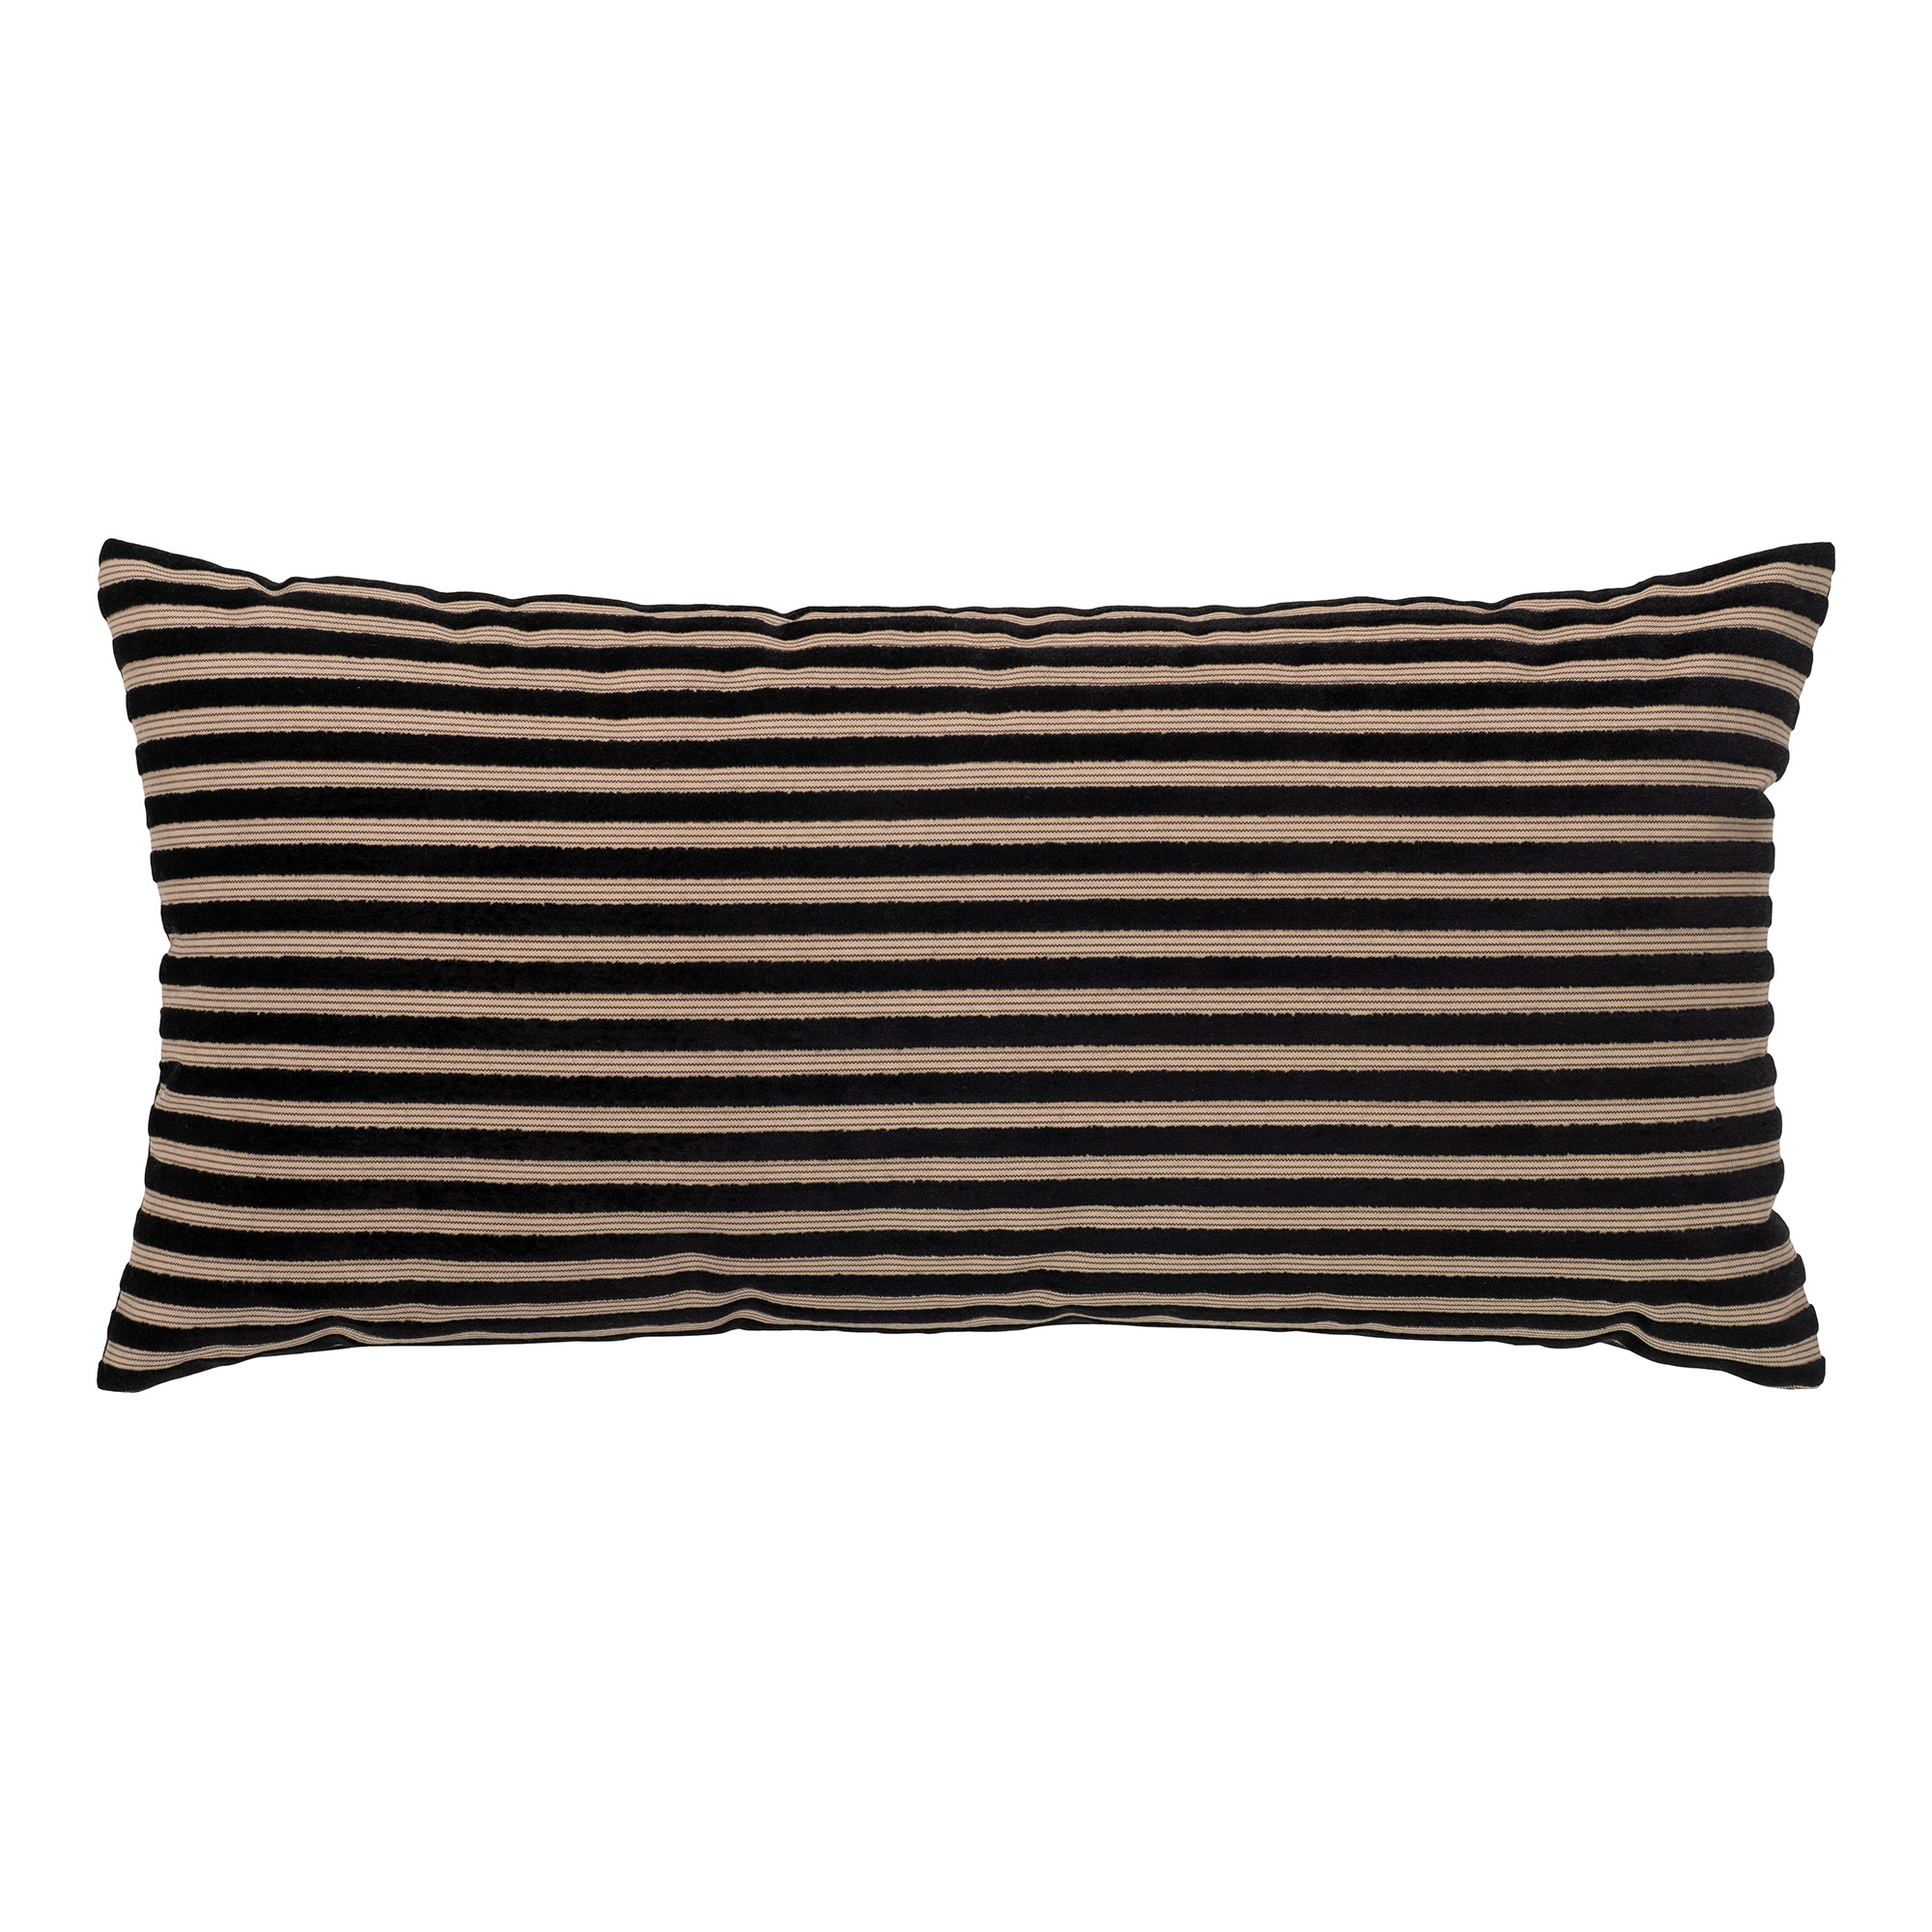 Serpa Cushion - Kussen in zwart/beige gestreept design 30x60 cm